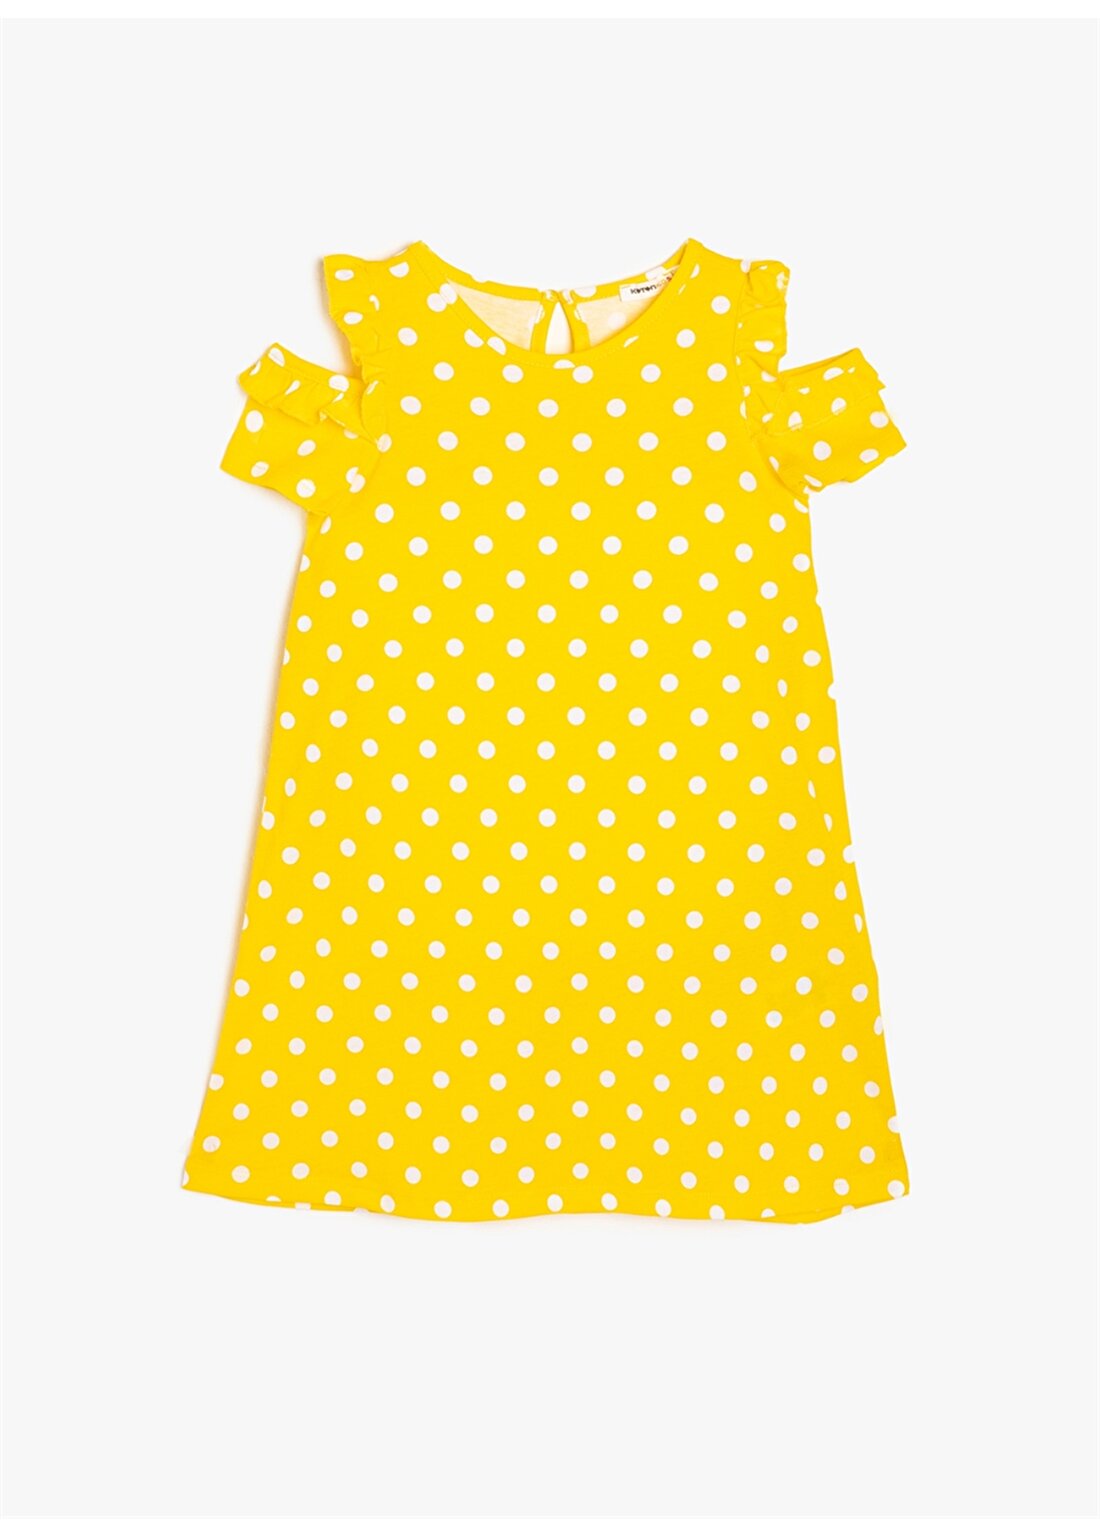 Koton Puantiyeli Sarı Elbise